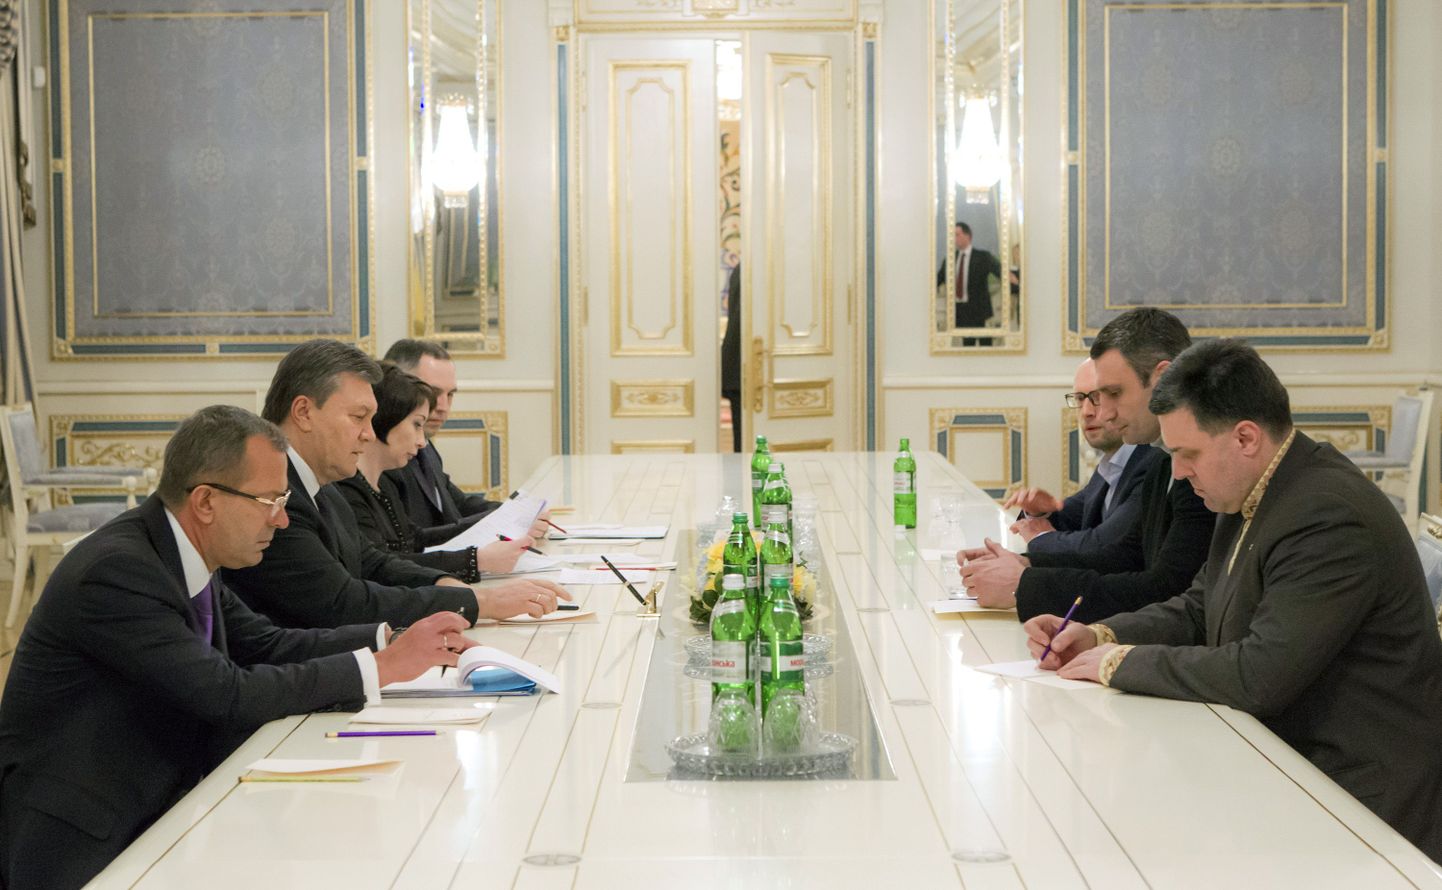 Переговоры между представителями оппозиции и украинскими властями будут продолжены в ближайшие дни.